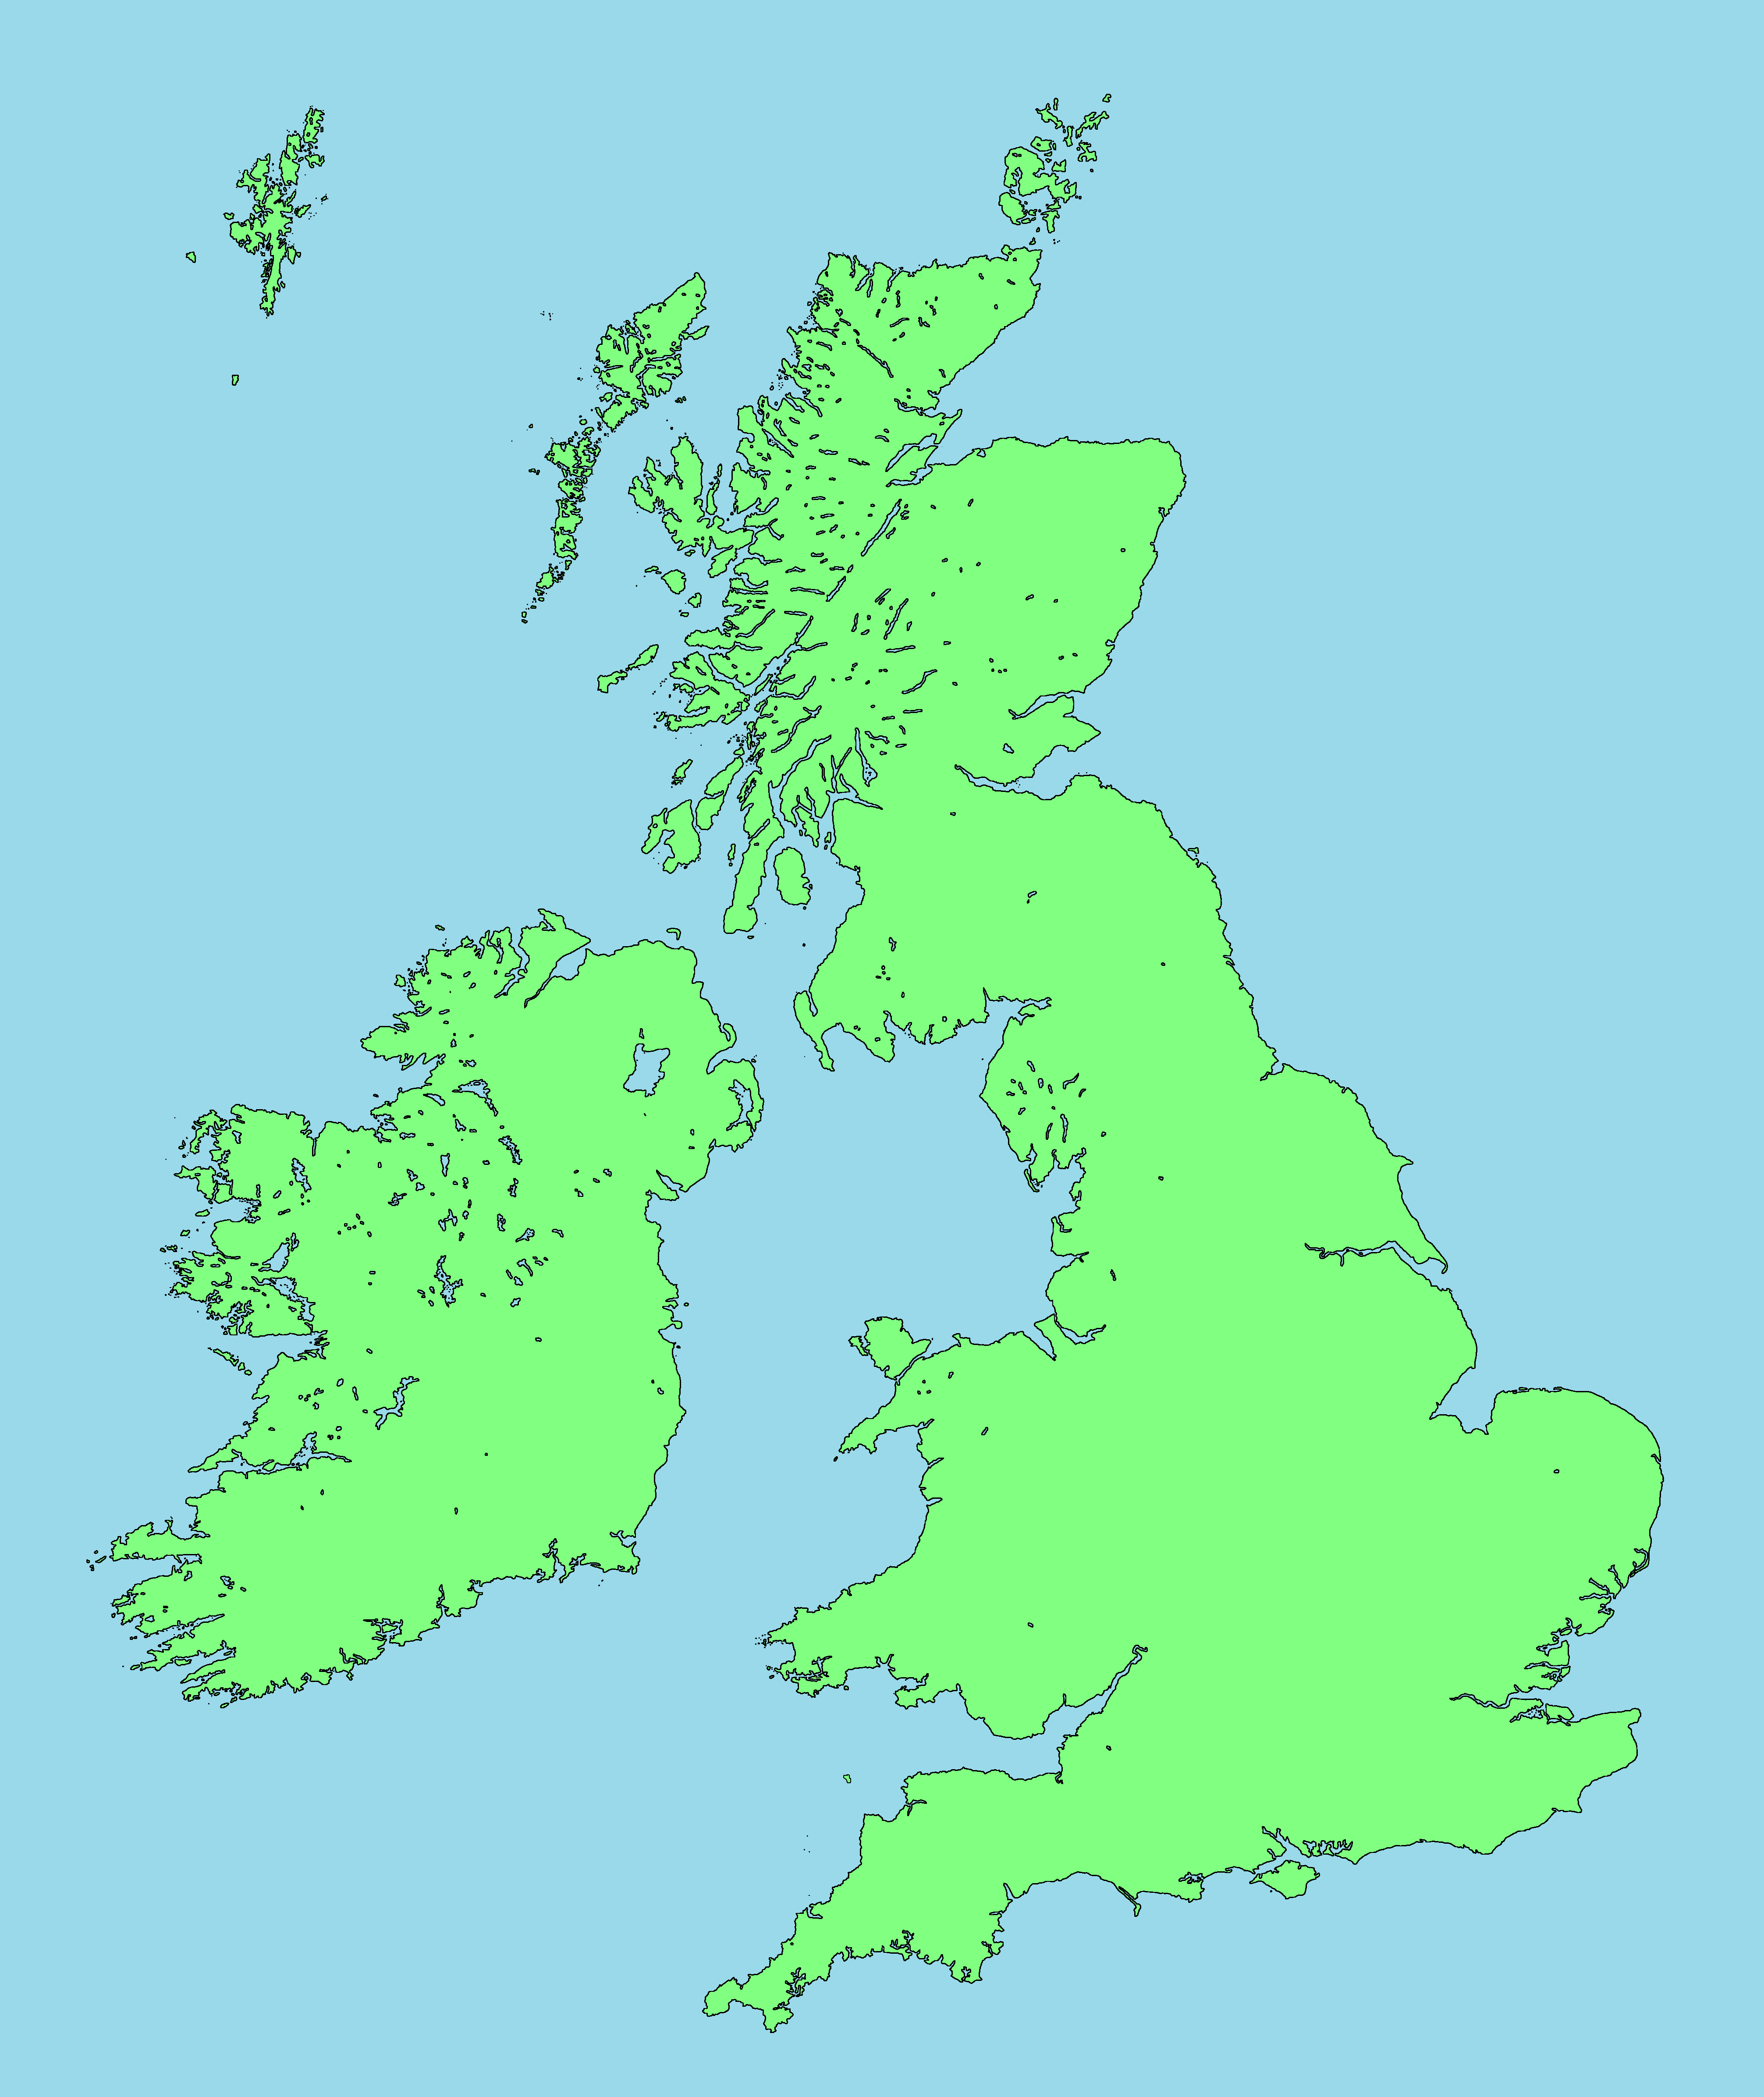 Uk territory. Остров Великобритания на карте. Остров Британия на карте. Карта Британии и британских островов. Острова Англии на карте.